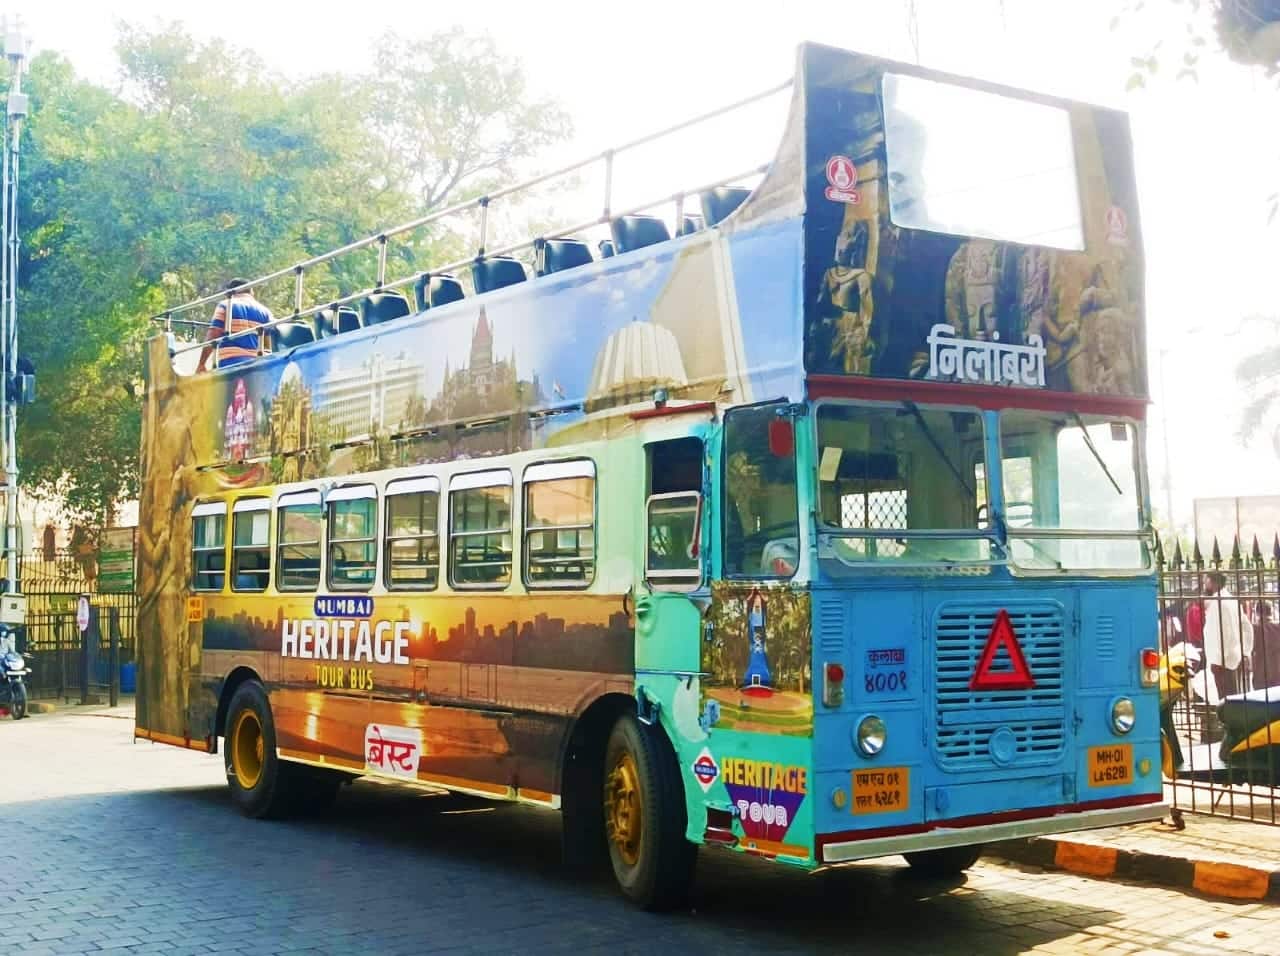 mumbai city tour bus booking